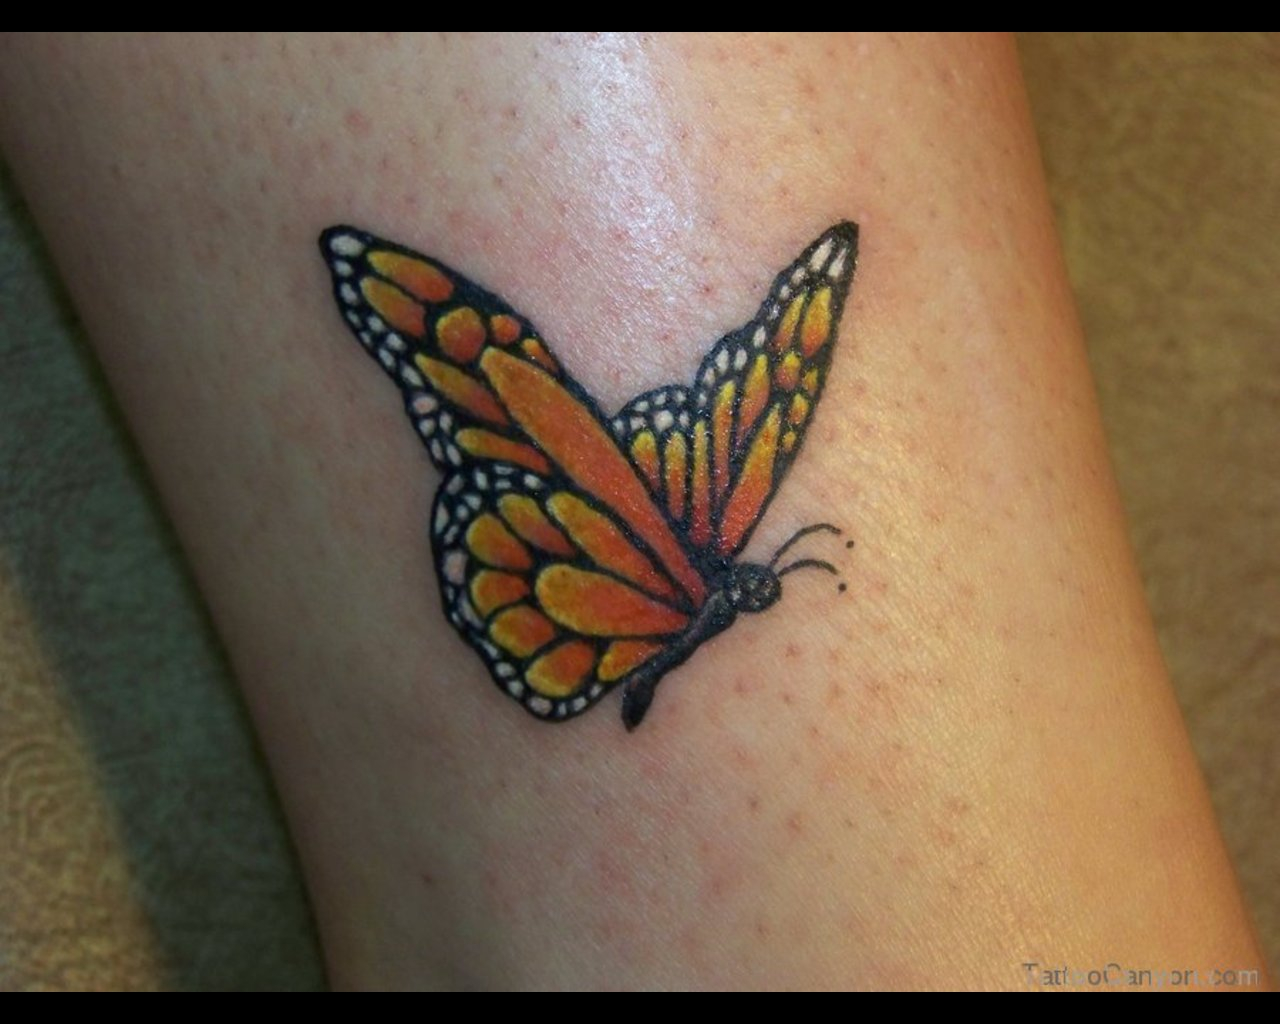 Малышка показала бабочку татуировку